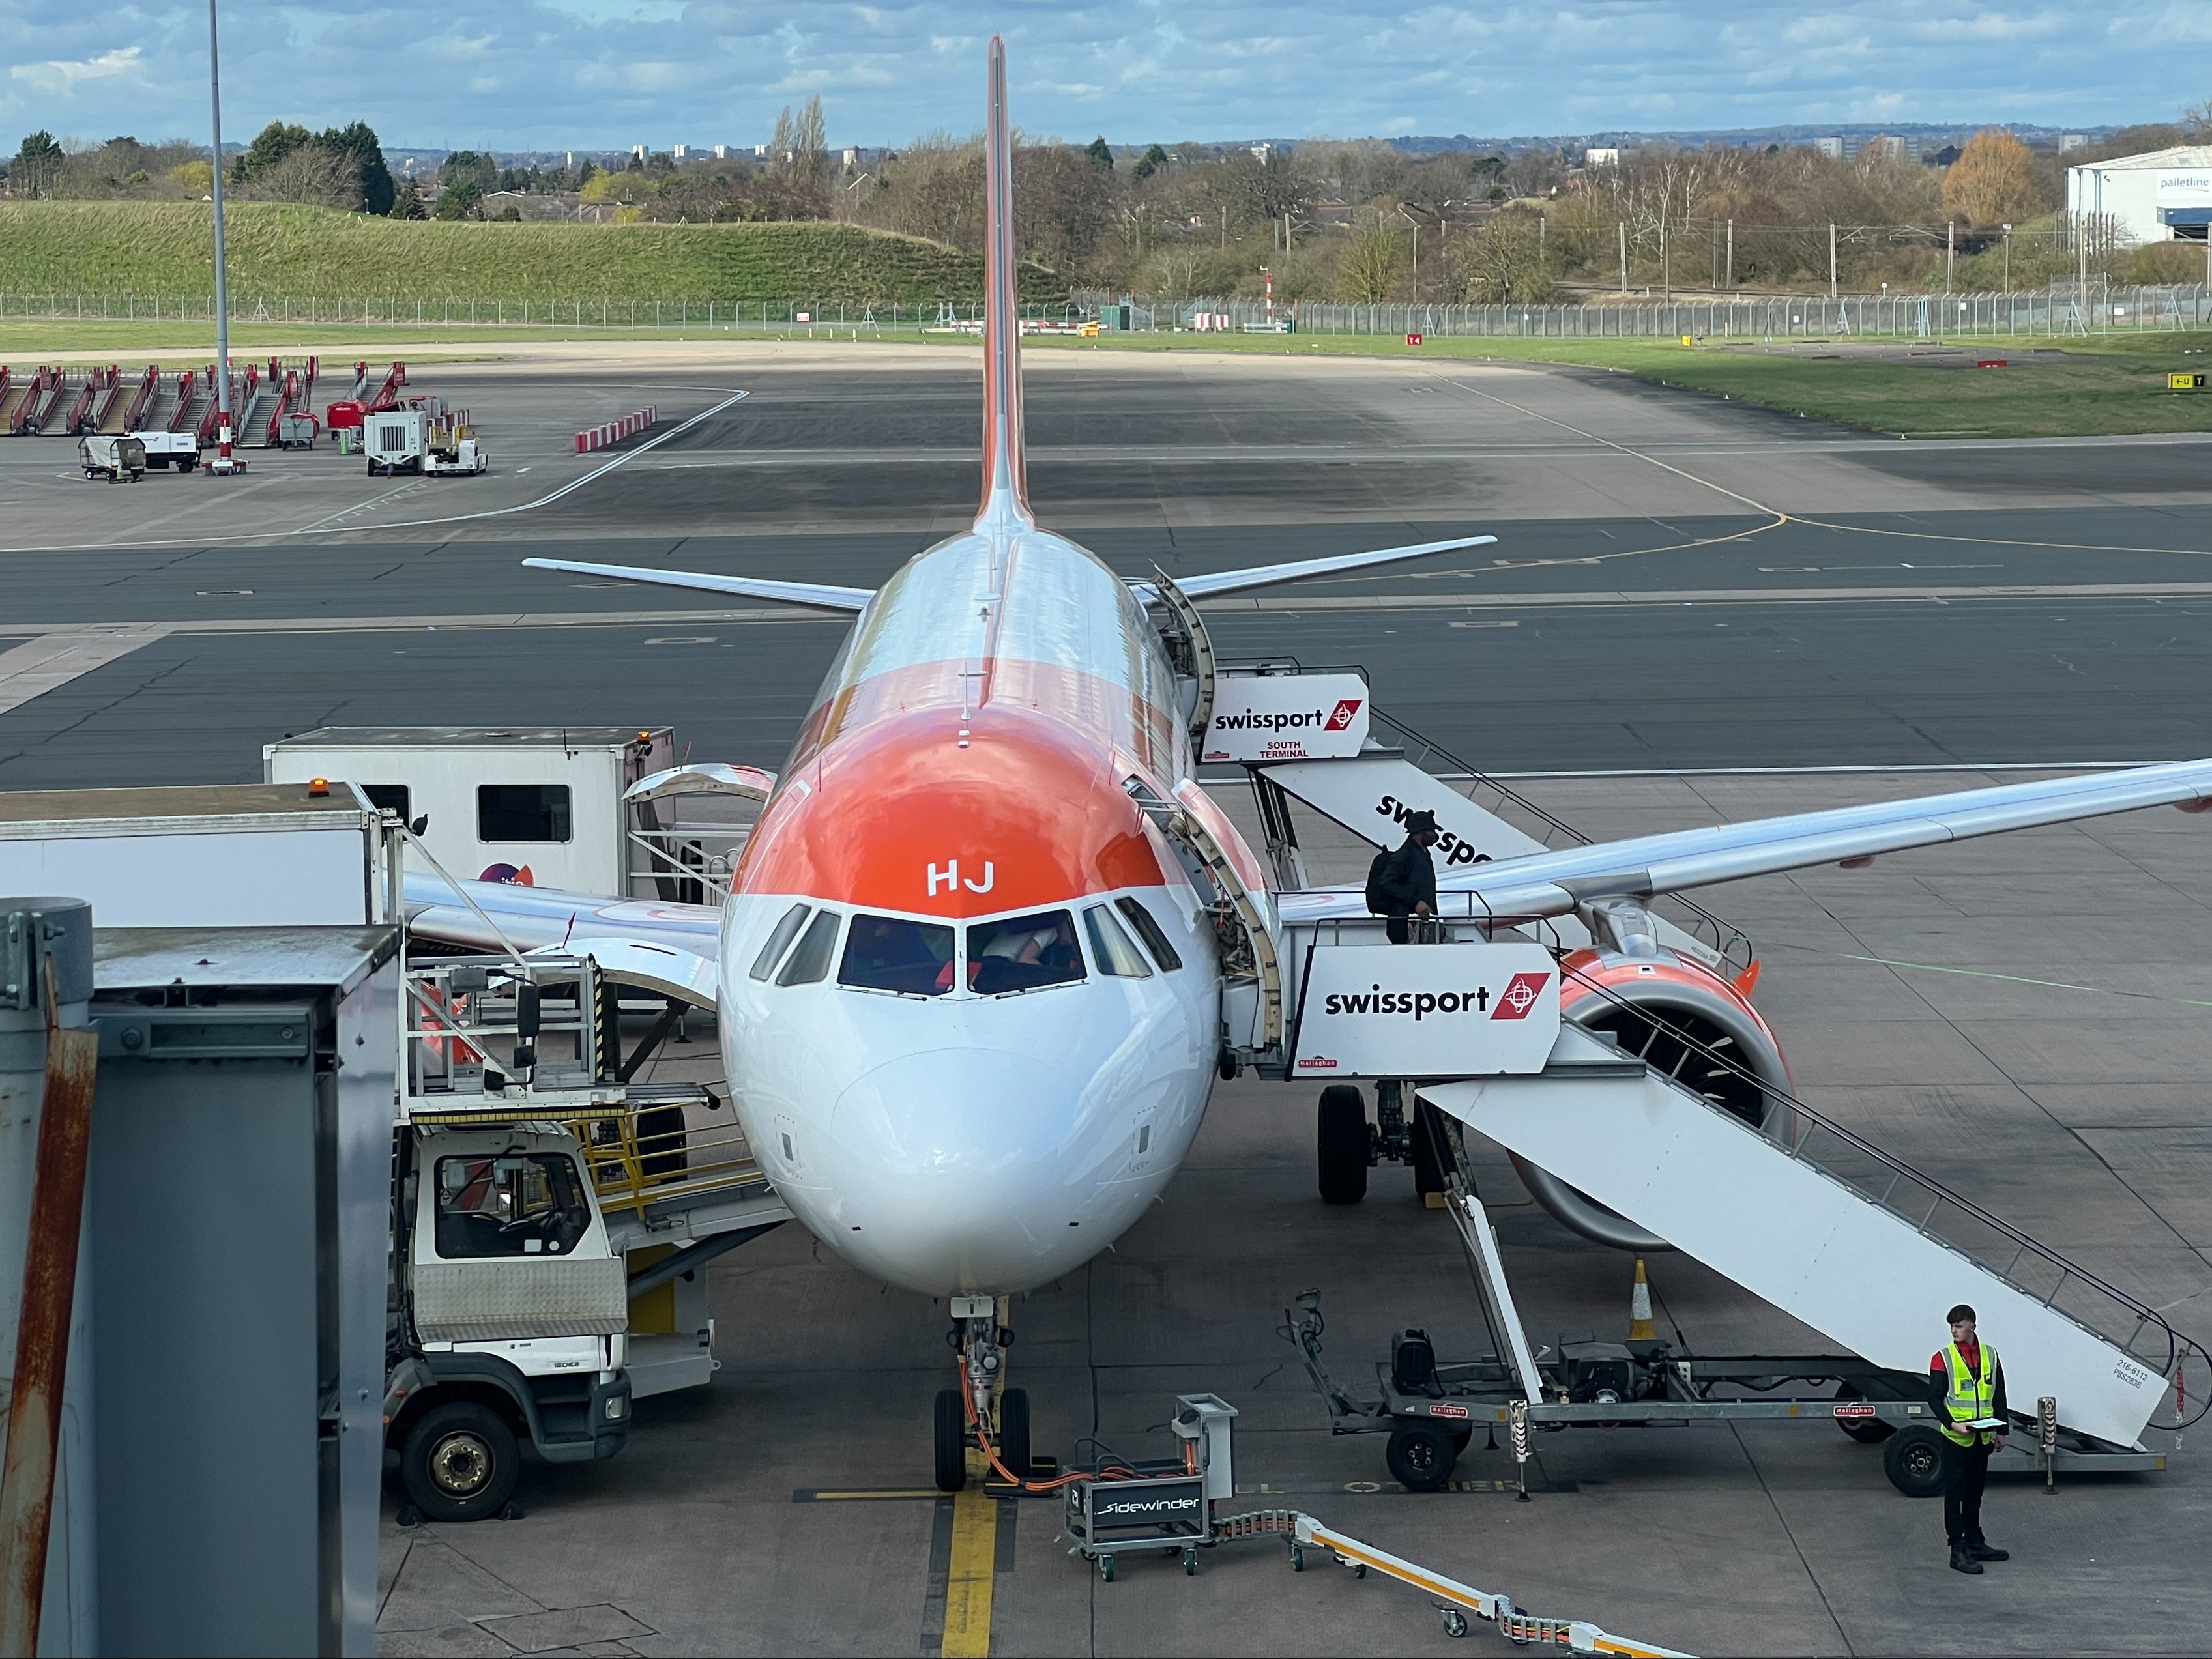 easyJet Airbus A320 at Birmingham airport